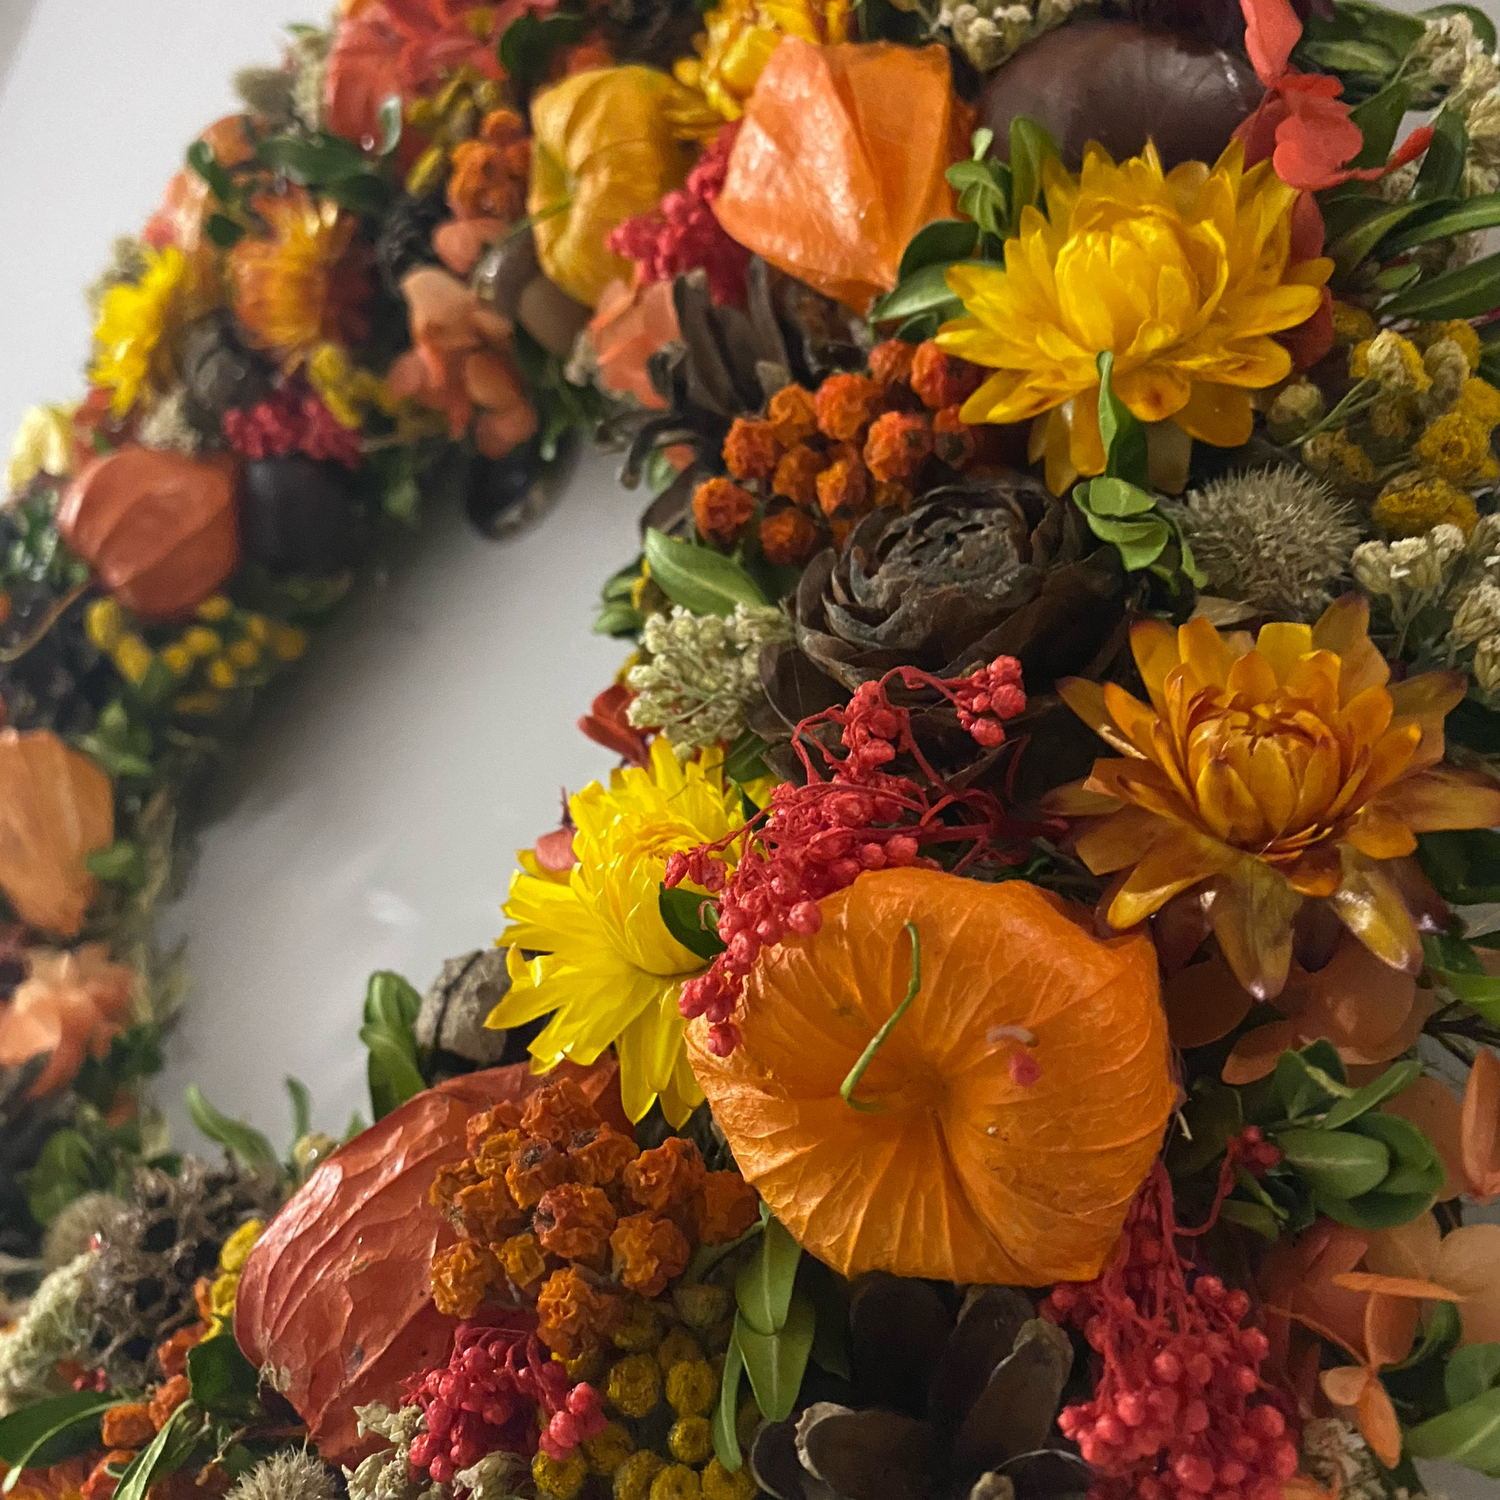 Фото №3 к отзыву покупателя Василисса о товаре Осенний венок в эко стиле из сухоцветов и природных материалов